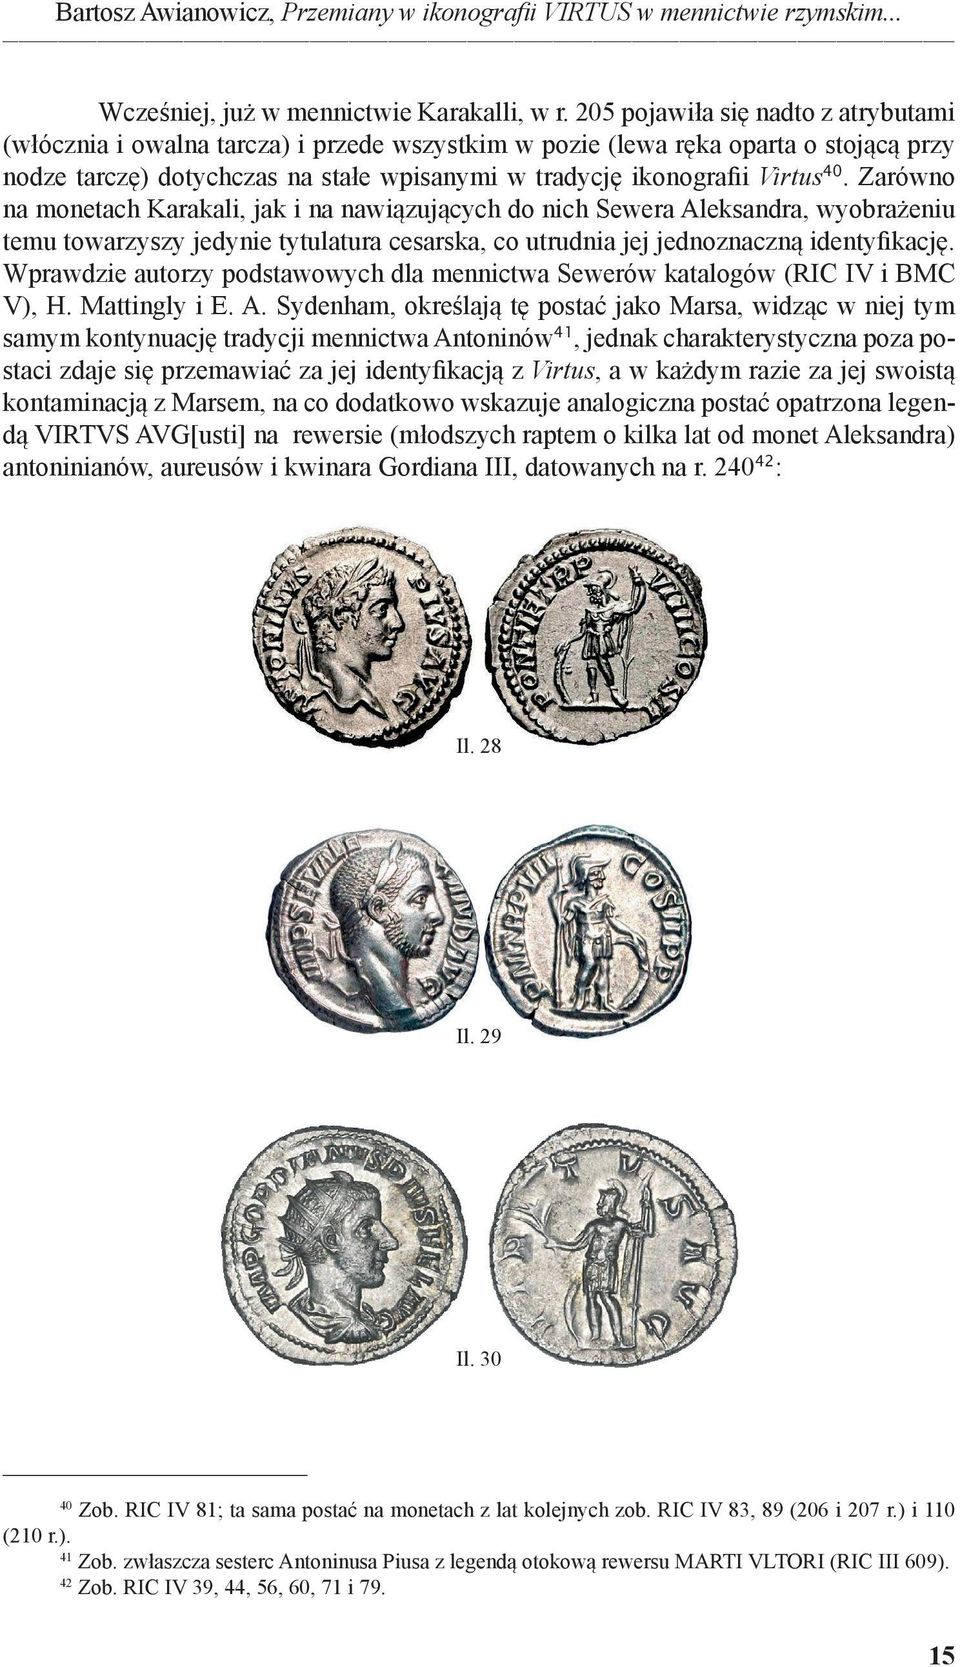 Zarówno na monetach Karakali, jak i na nawiązujących do nich Sewera Aleksandra, wyobrażeniu temu towarzyszy jedynie tytulatura cesarska, co utrudnia jej jednoznaczną identyfikację.